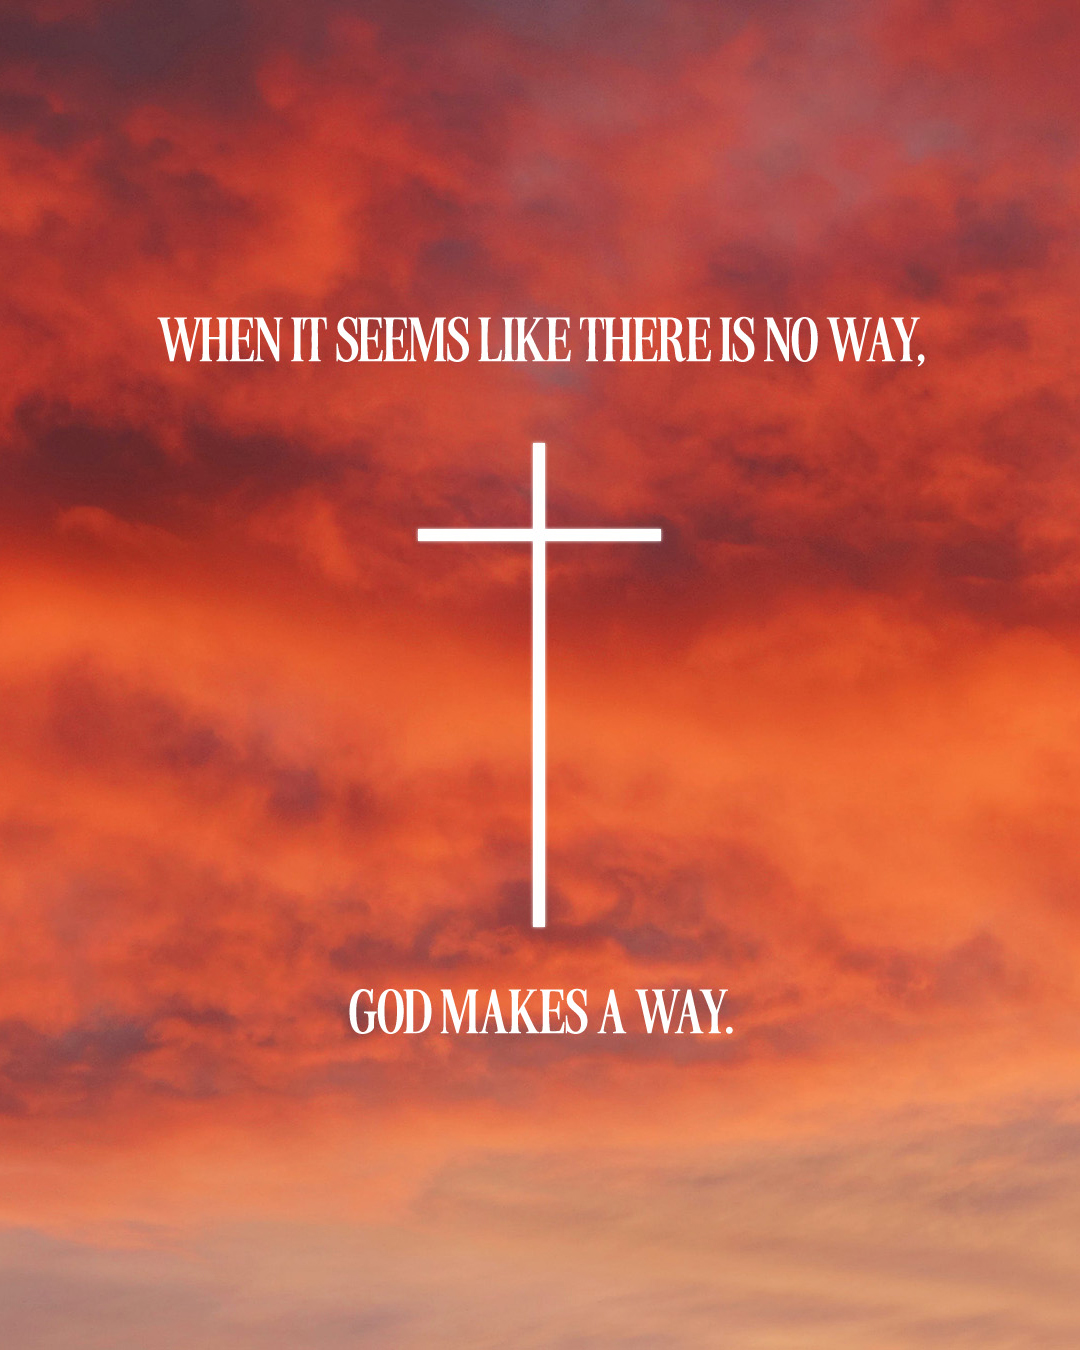 God makes a way